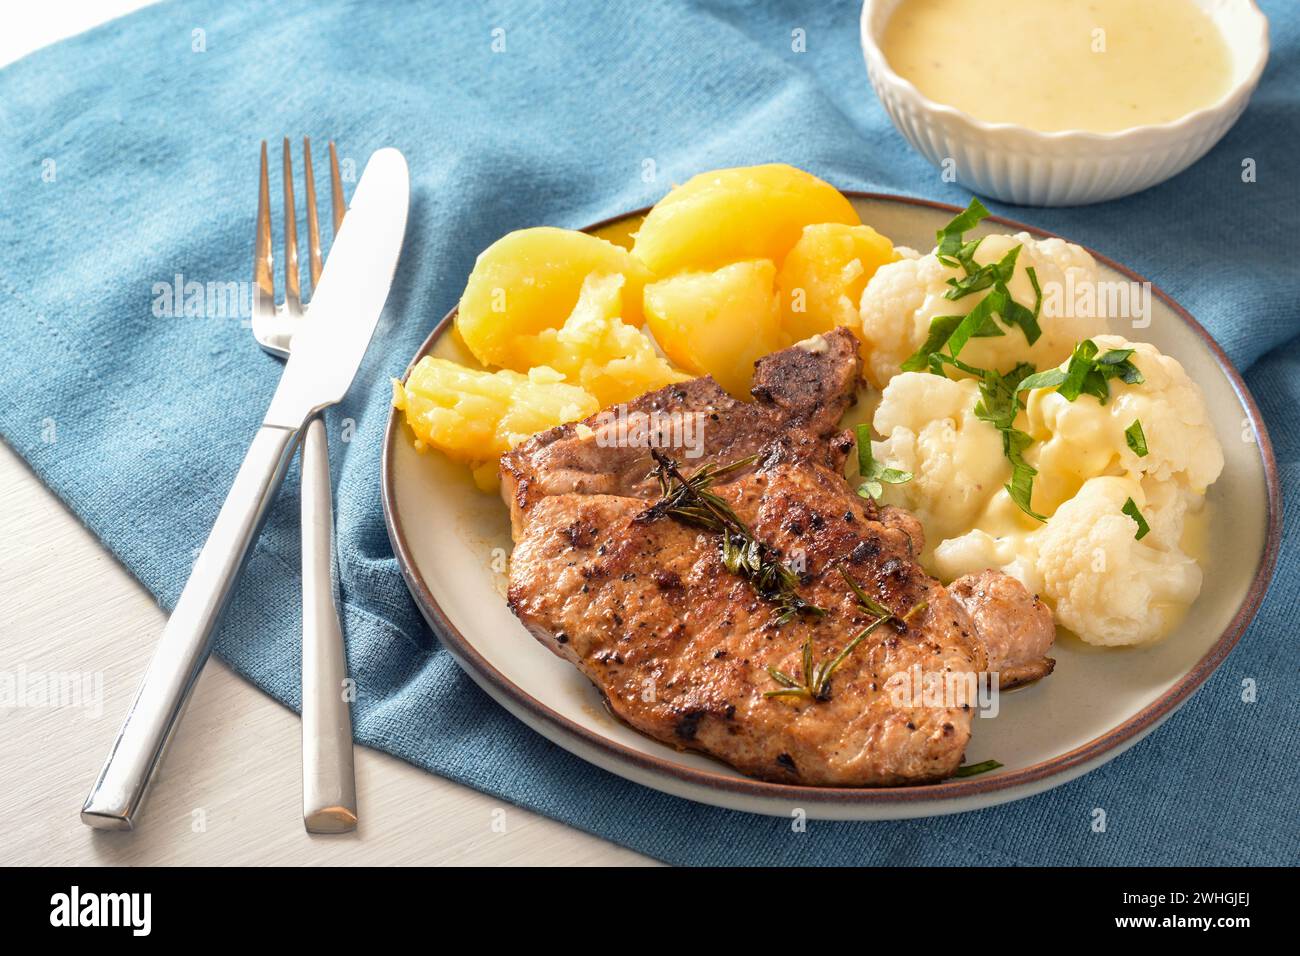 Gericht mit Schweinekotelett, Blumenkohl, Kartoffeln und Hollandaise-Sauce serviert mit Kräutergarnitur auf einem Teller und einer blauen Serviette, ausgewählt Stockfoto